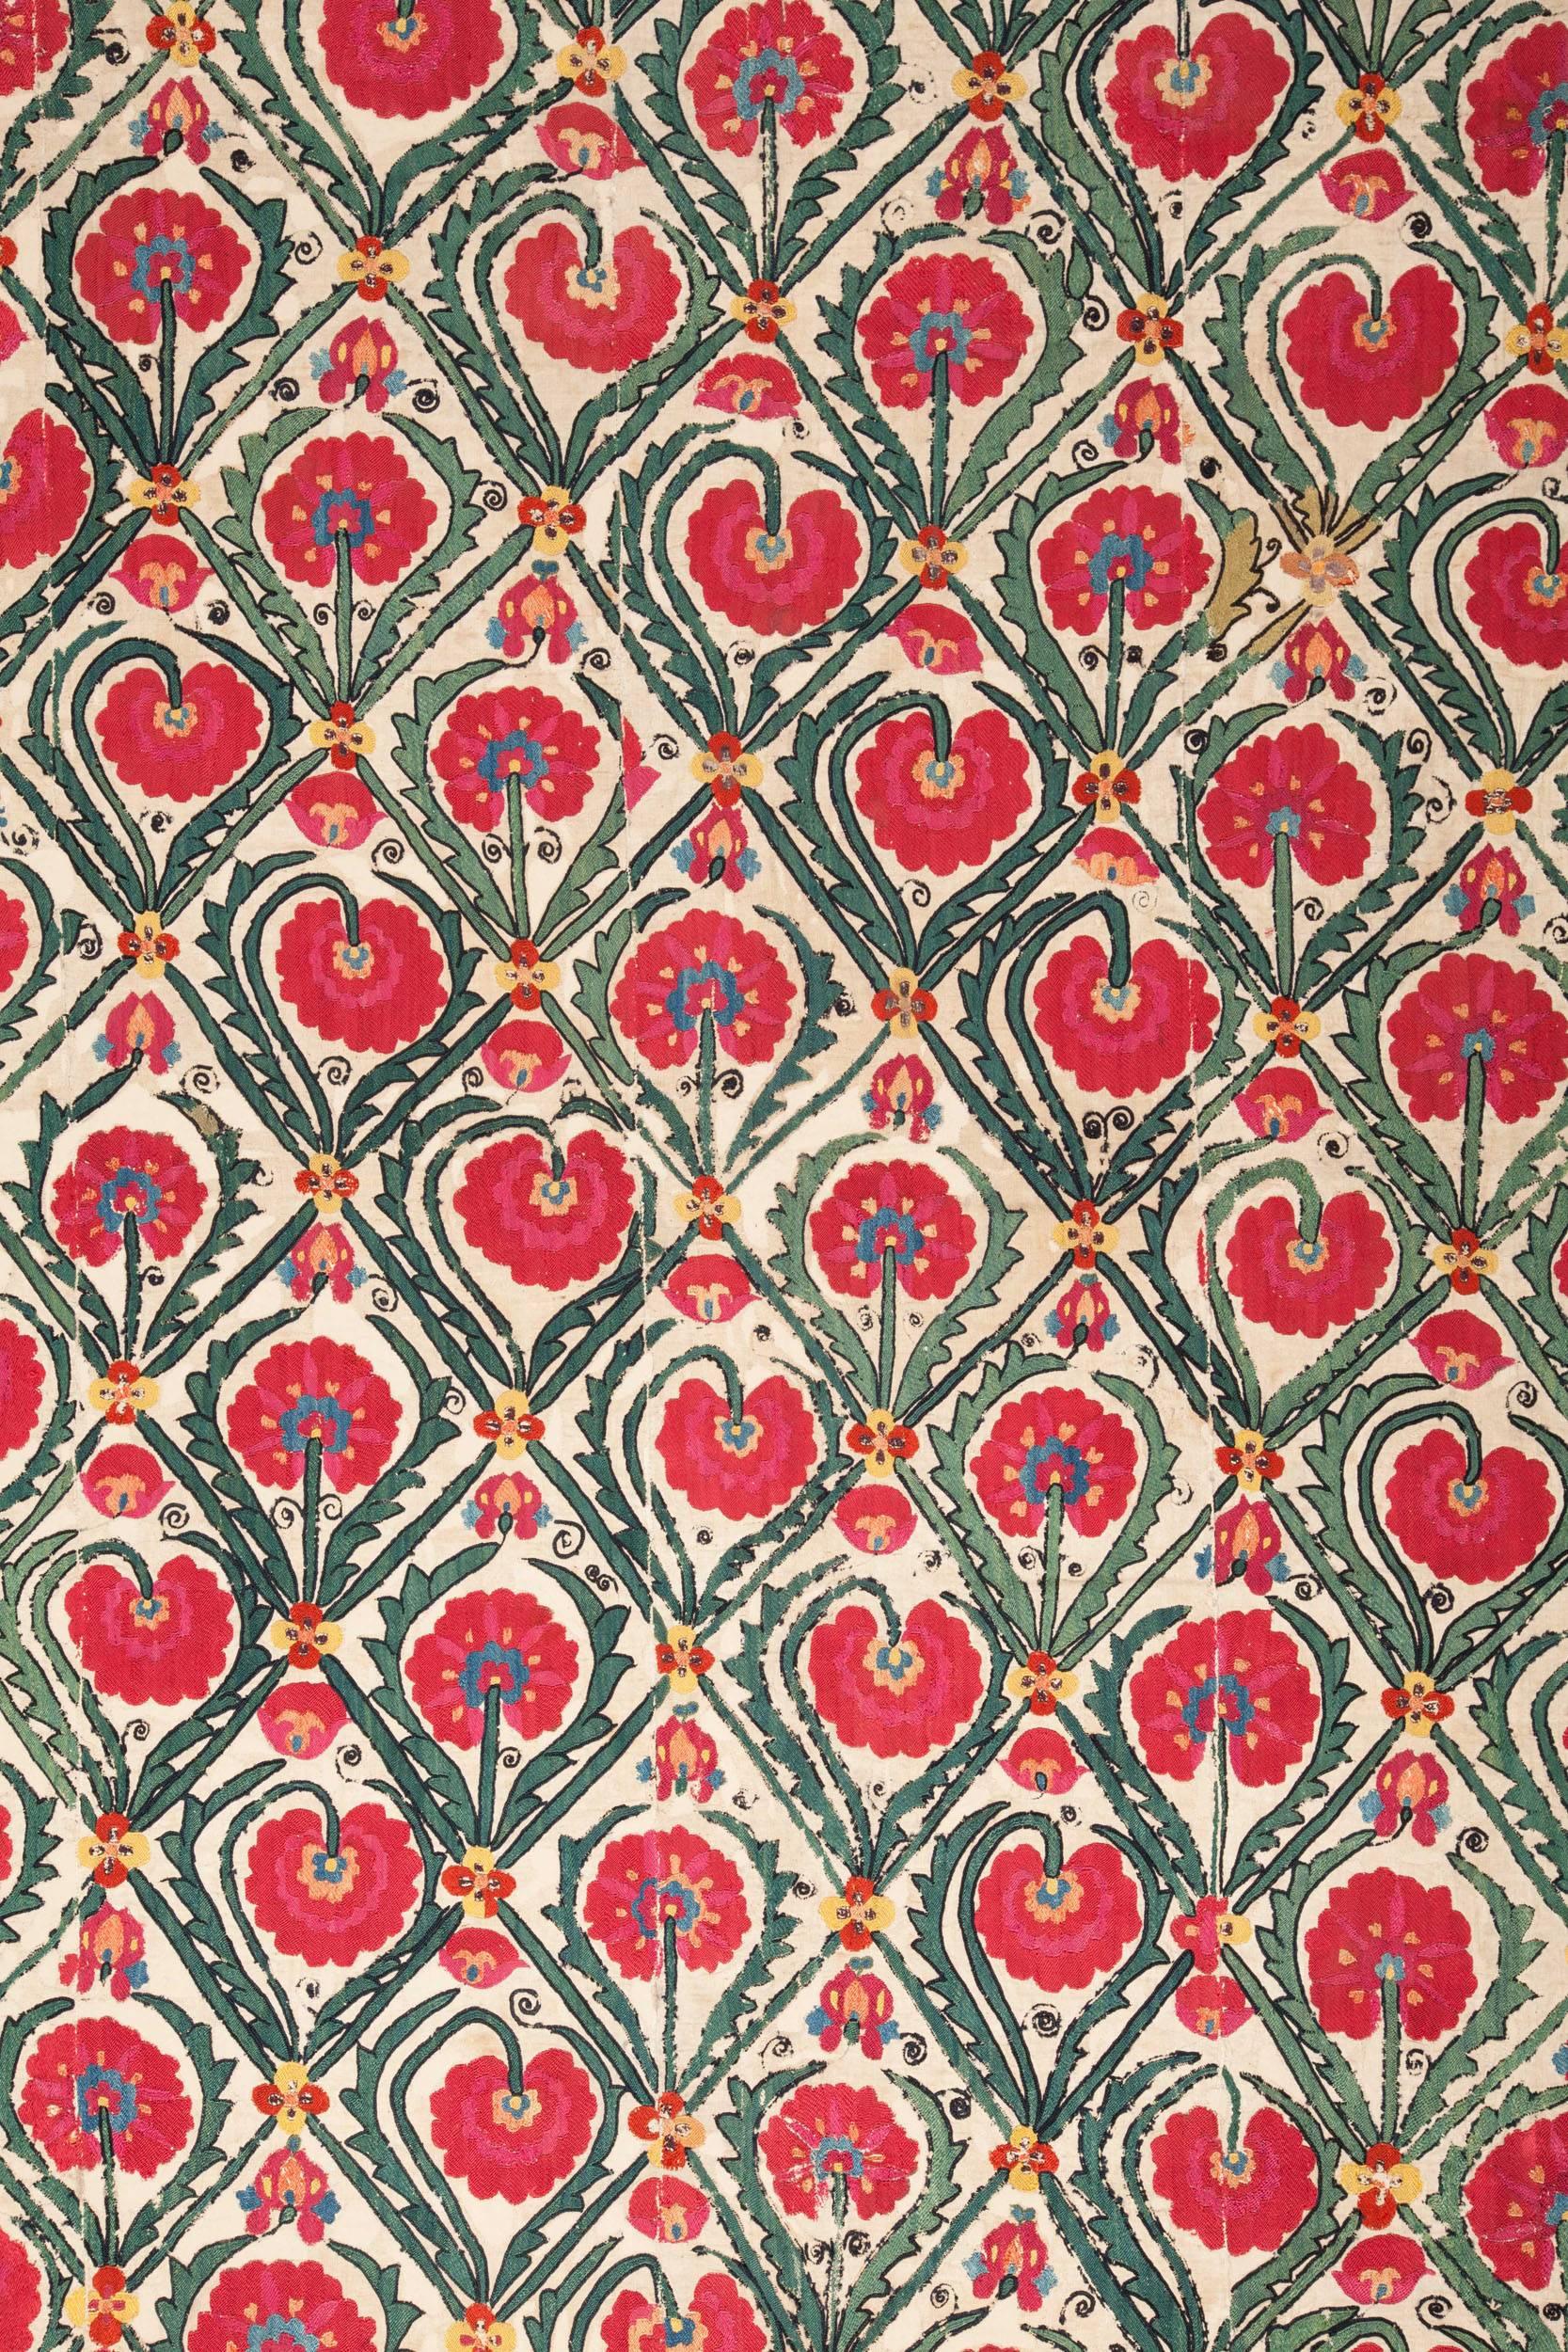 Ein früher usbekischer Shakrisabz-Susani-Teppich mit einem ungewöhnlichen Design und großer Farbsättigung. Maße: 6'2'' x 8'0''. Hat einige Probleme mit dem Zustand, es ist mit einer zweiten Schicht aus elfenbeinfarbener Baumwolle hinterlegt und mit